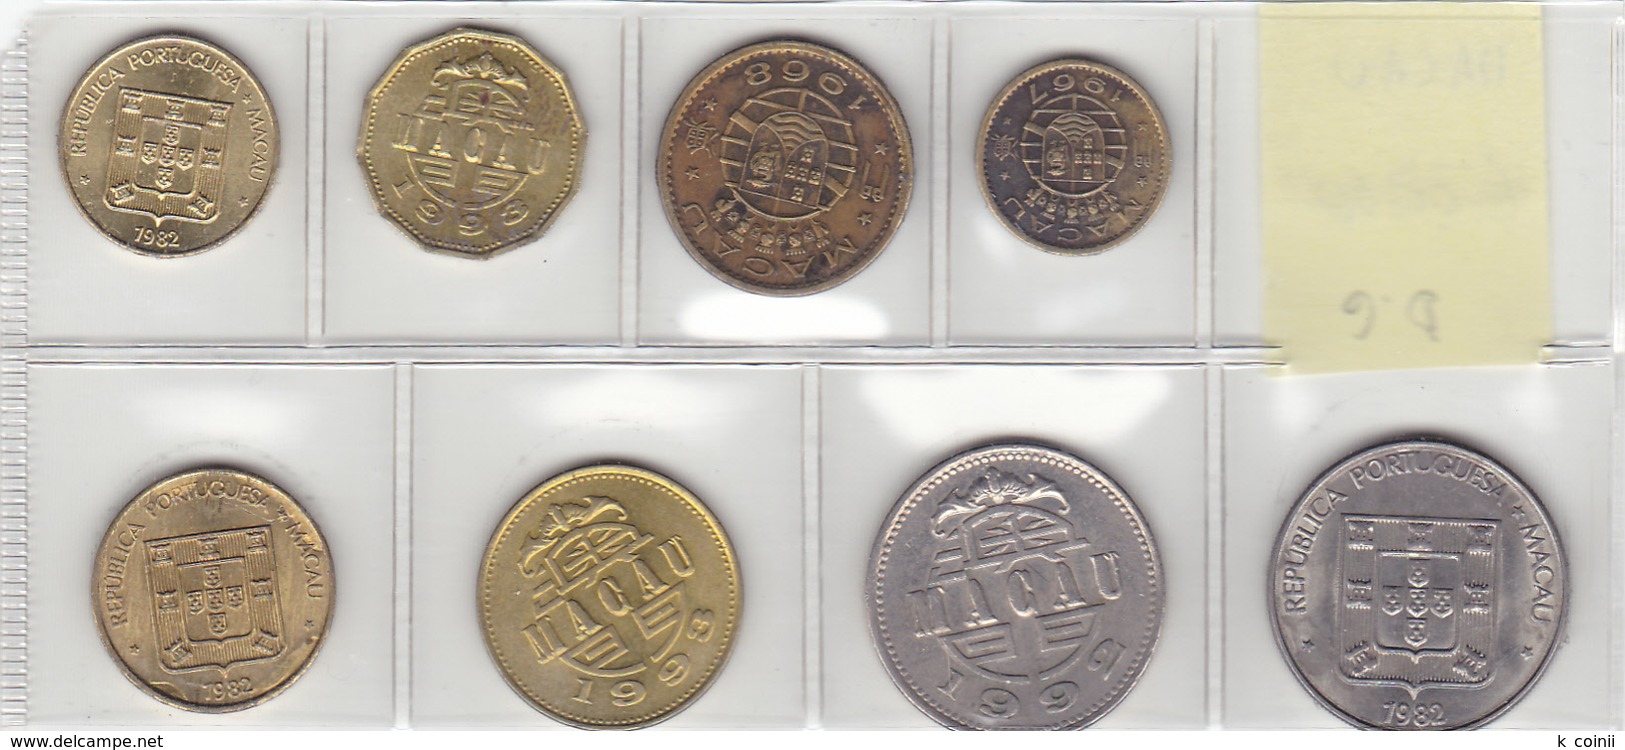 Macau - Set Of 8 Coins - Ref02 - Macao